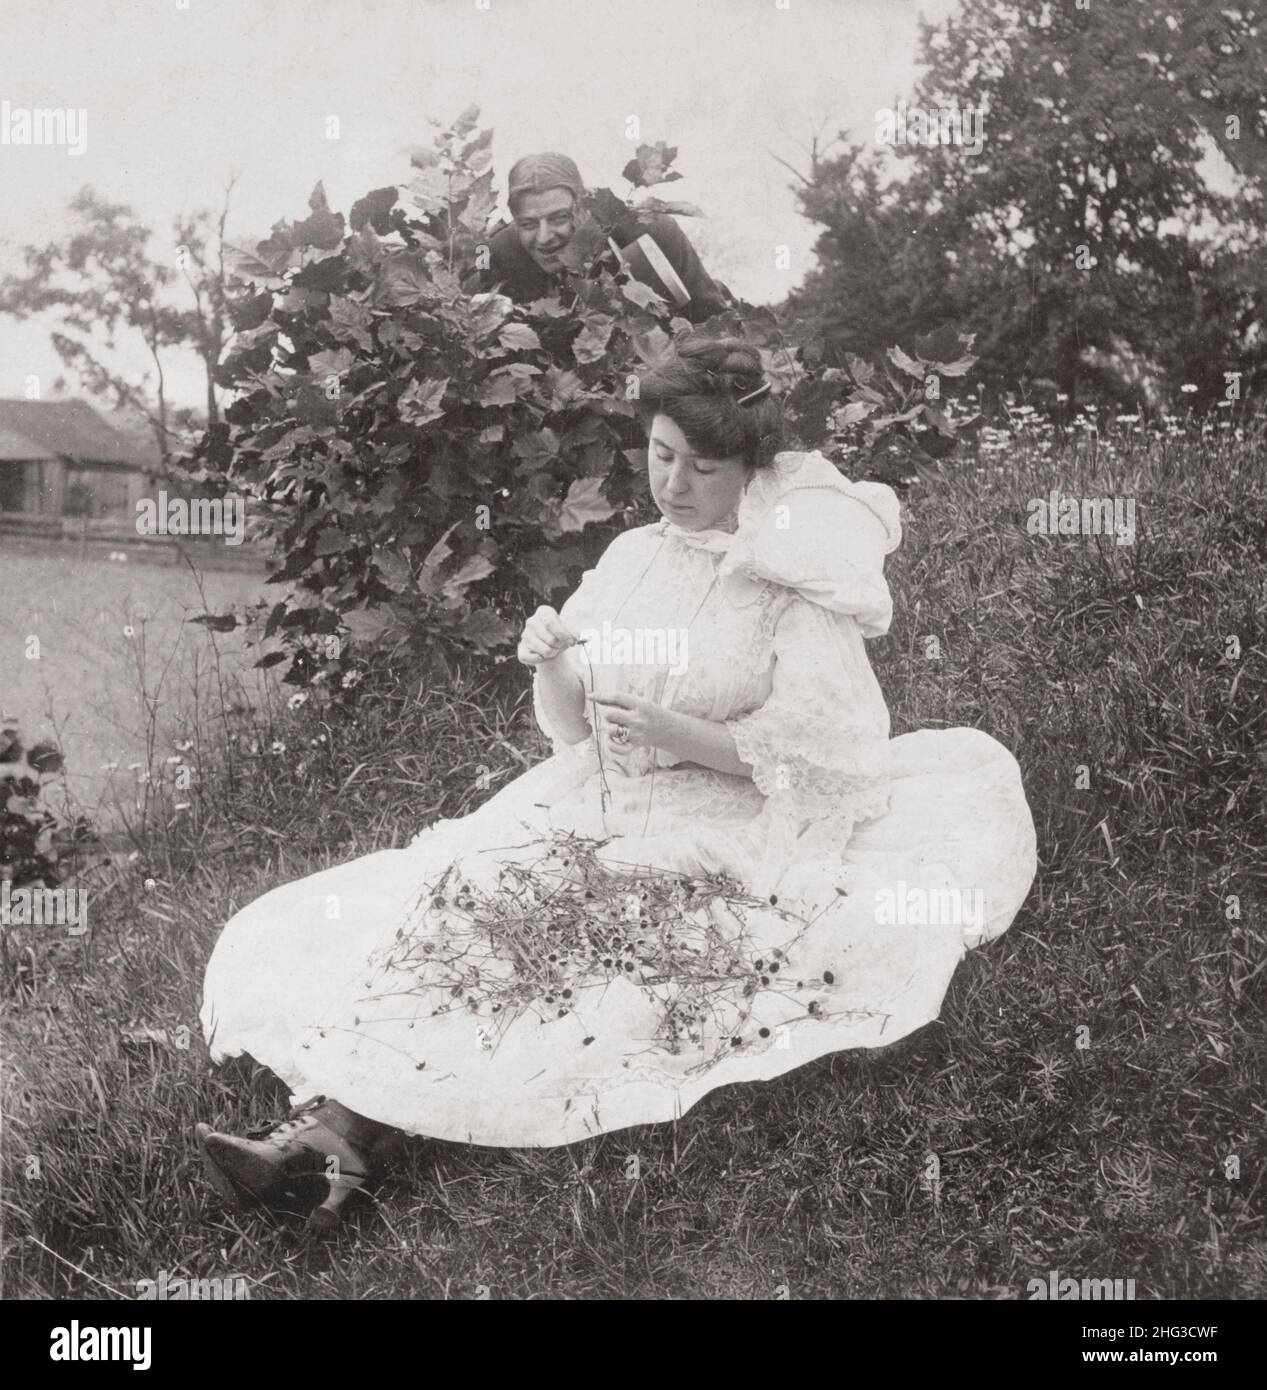 Vintage-Foto der Liebe. Er liebt mich, er liebt mich nicht. 1906 Frau saß auf dem Boden und pflückte Blütenblätter aus Blumen, während der Mann hinter dem Busch zuschaut. Stockfoto